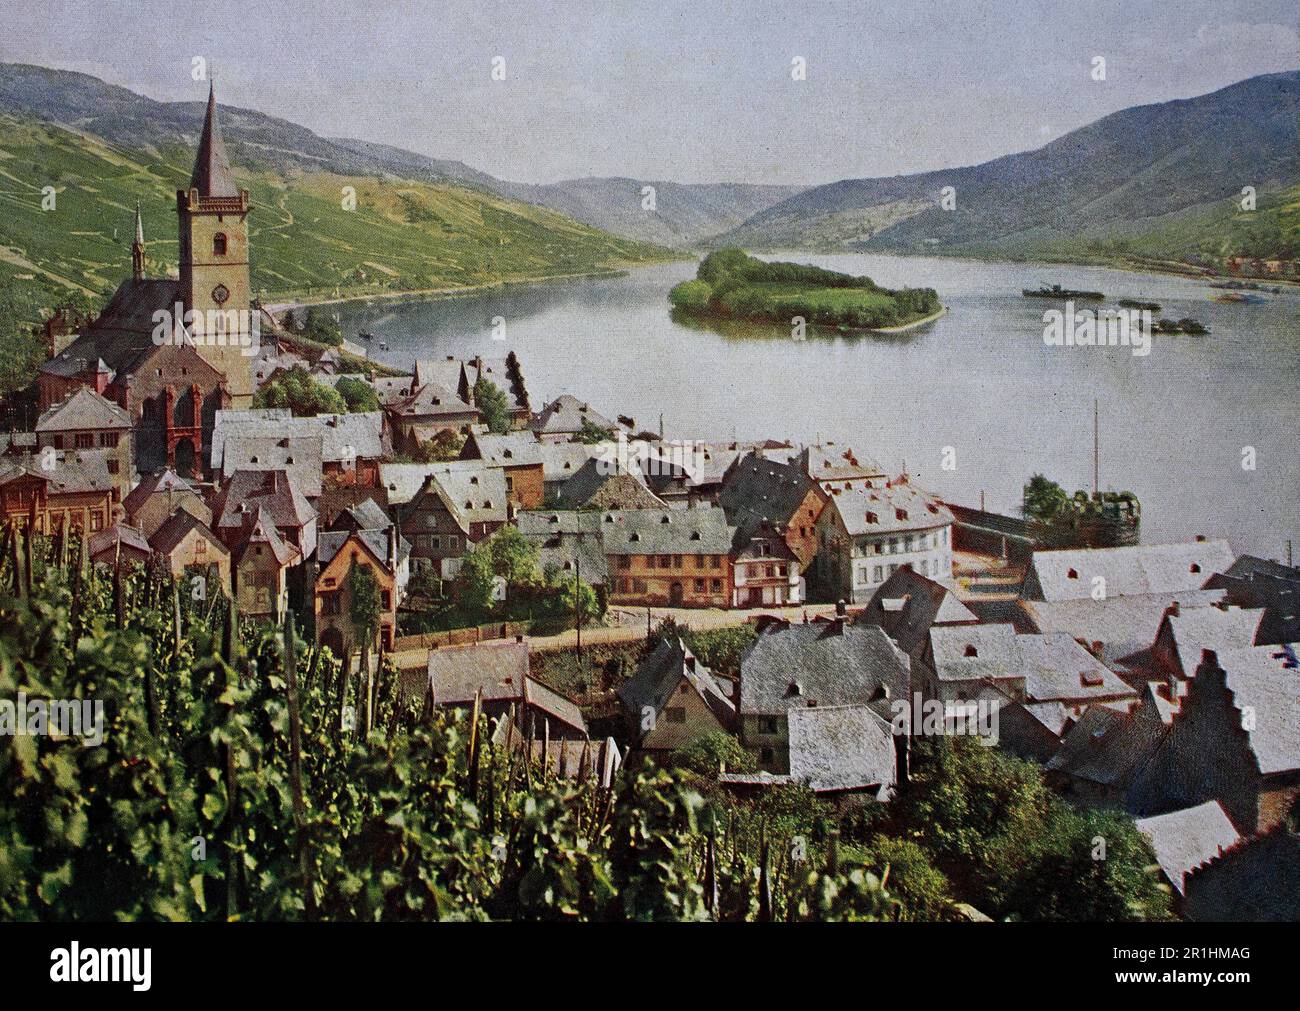 Lorch am Rhein im Jahre 1910, Hessen, Deutschland, Fotografie, ristorante digitale Reproduktion einer Originalvorlage aus dem frühen 20. Jahrhundert, genaues Originalatum nicht bekannt Foto Stock